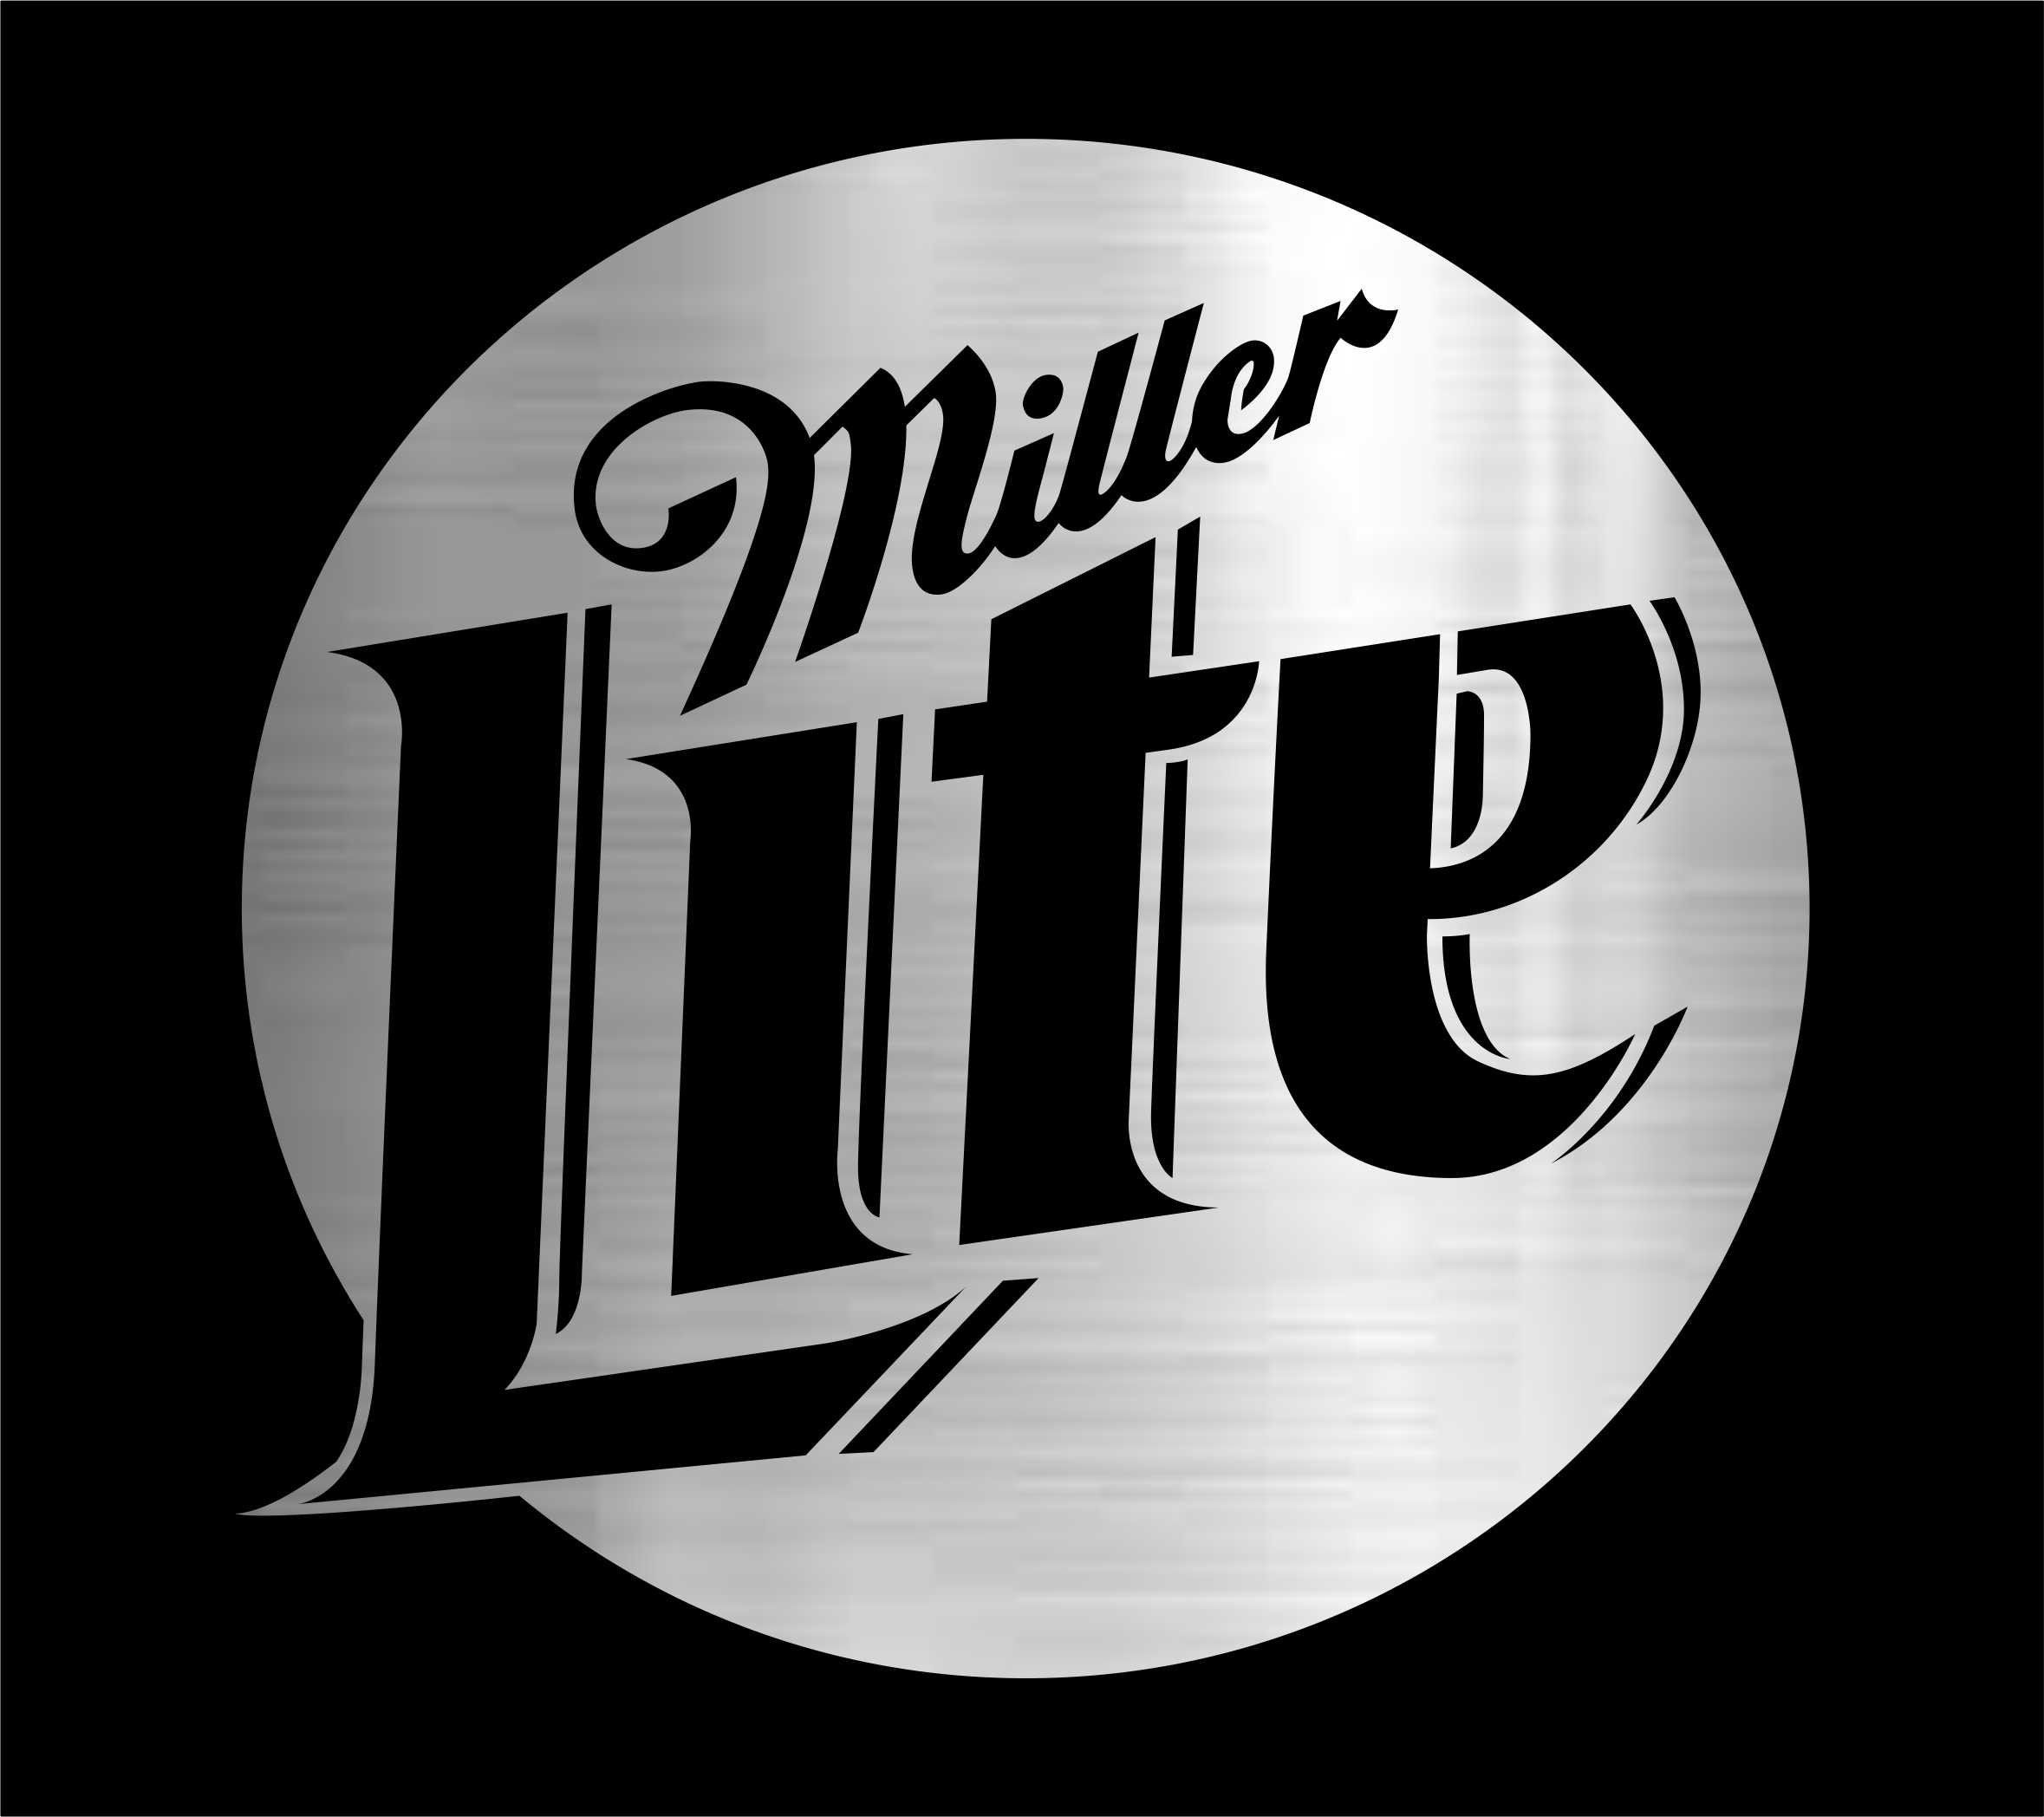 Miller lite beer for sale  